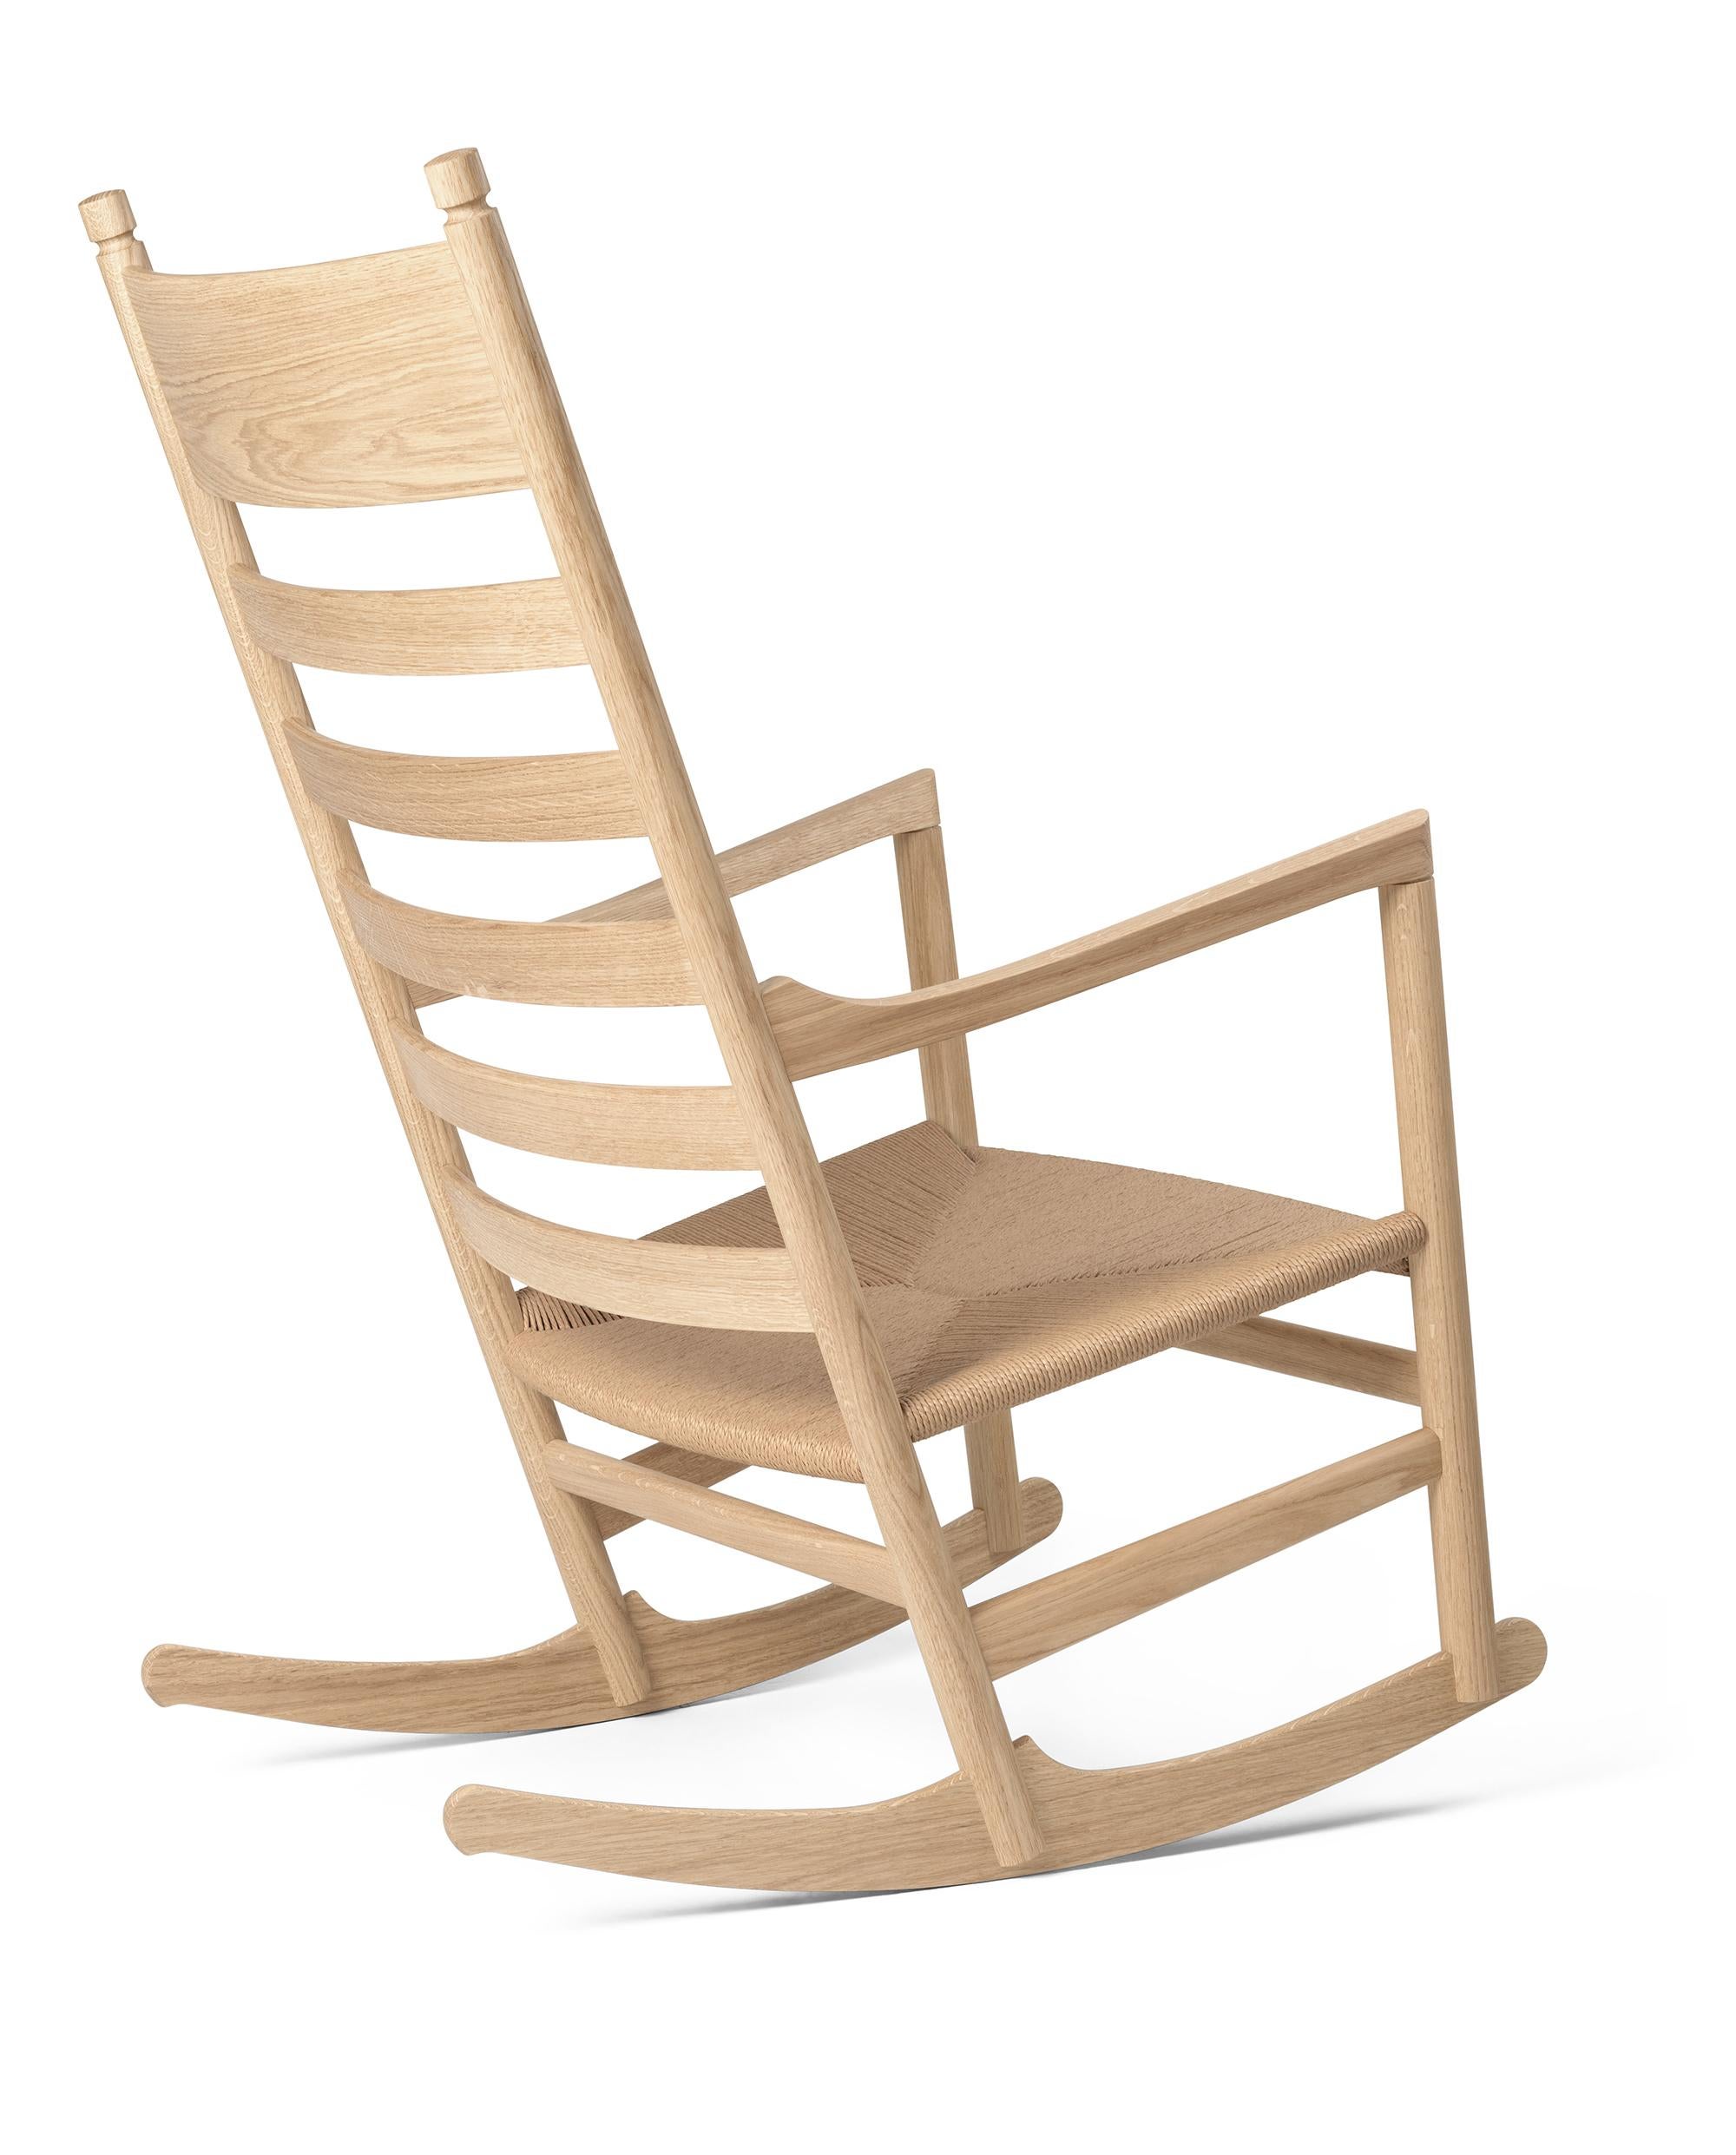 Hans J. Wegner 'CH45' Rocking Chair for Carl Hansen & Son in Oak Soap.

L'histoire de la modernité danoise commence en 1908, lorsque Carl Hansen ouvre son premier atelier. Son engagement ferme en faveur de la beauté, du confort, du raffinement et de